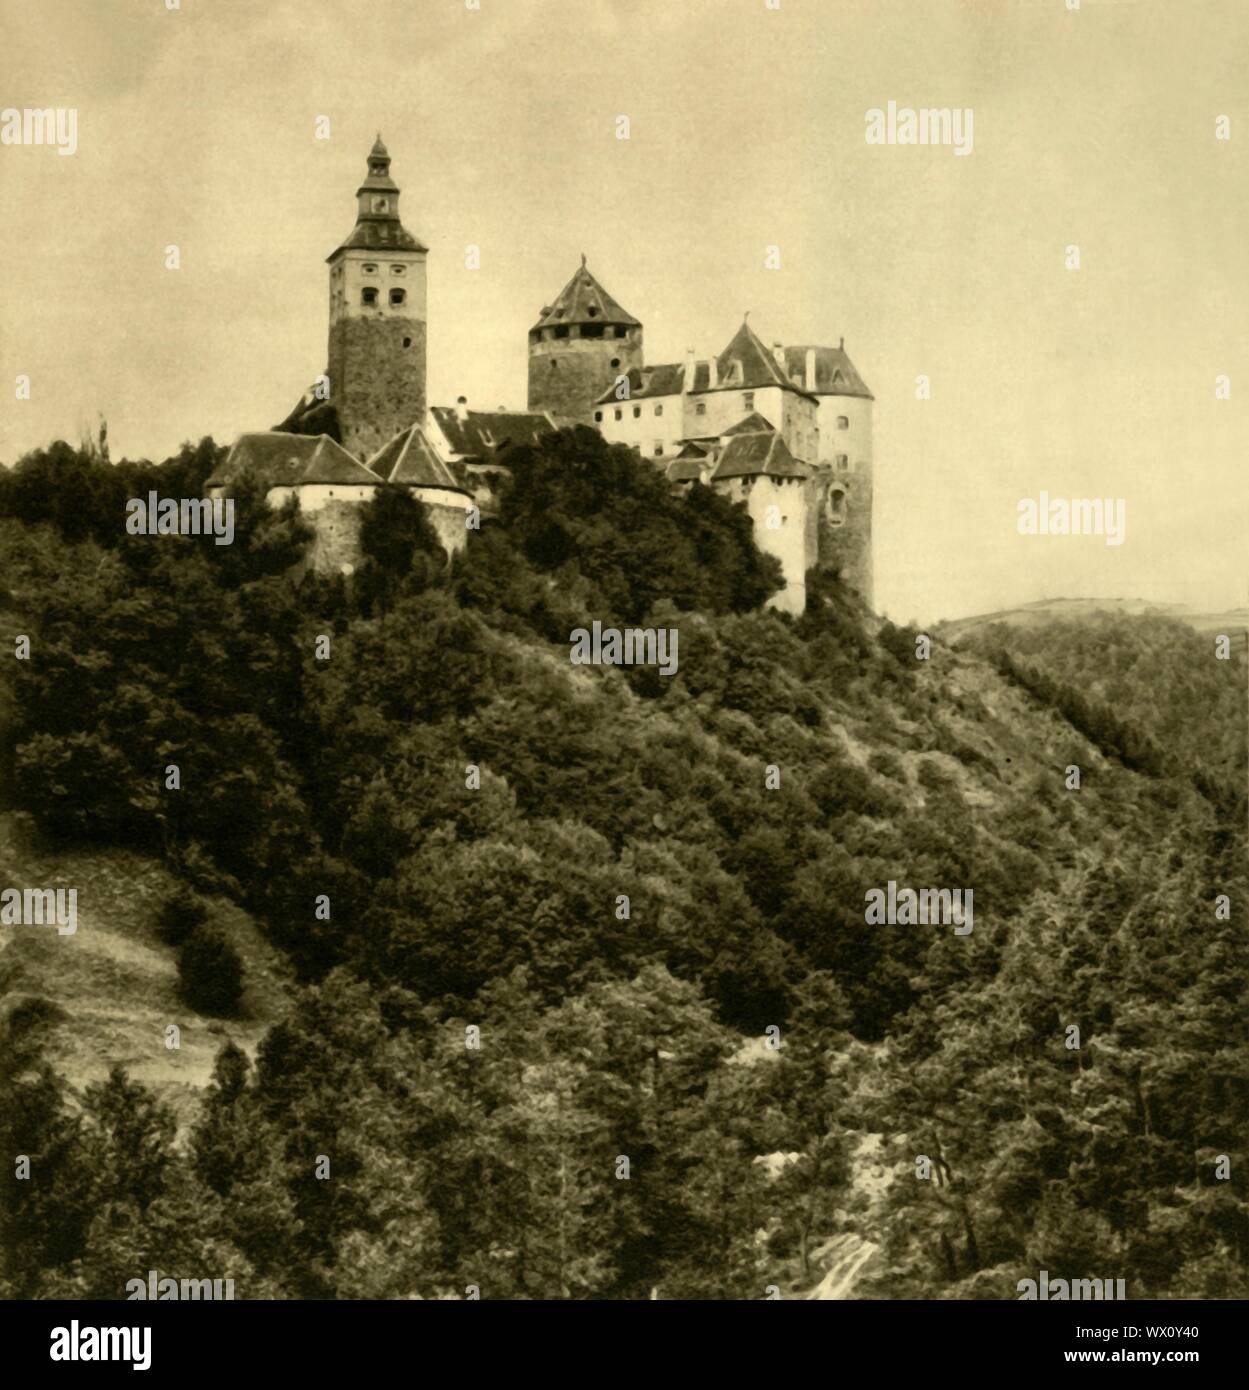 Burg Schlaining, Burgenland, Austria, c1935. Castle Schlaining, in Stadtschlaining in the state of Burgenland, was built in the early 13th century. From &quot;&#xd6;sterreich - Land Und Volk&quot;, (Austria, Land and People). [R. Lechner (Wilhelm M&#xfc;ller), Vienna, c1935] Stock Photo